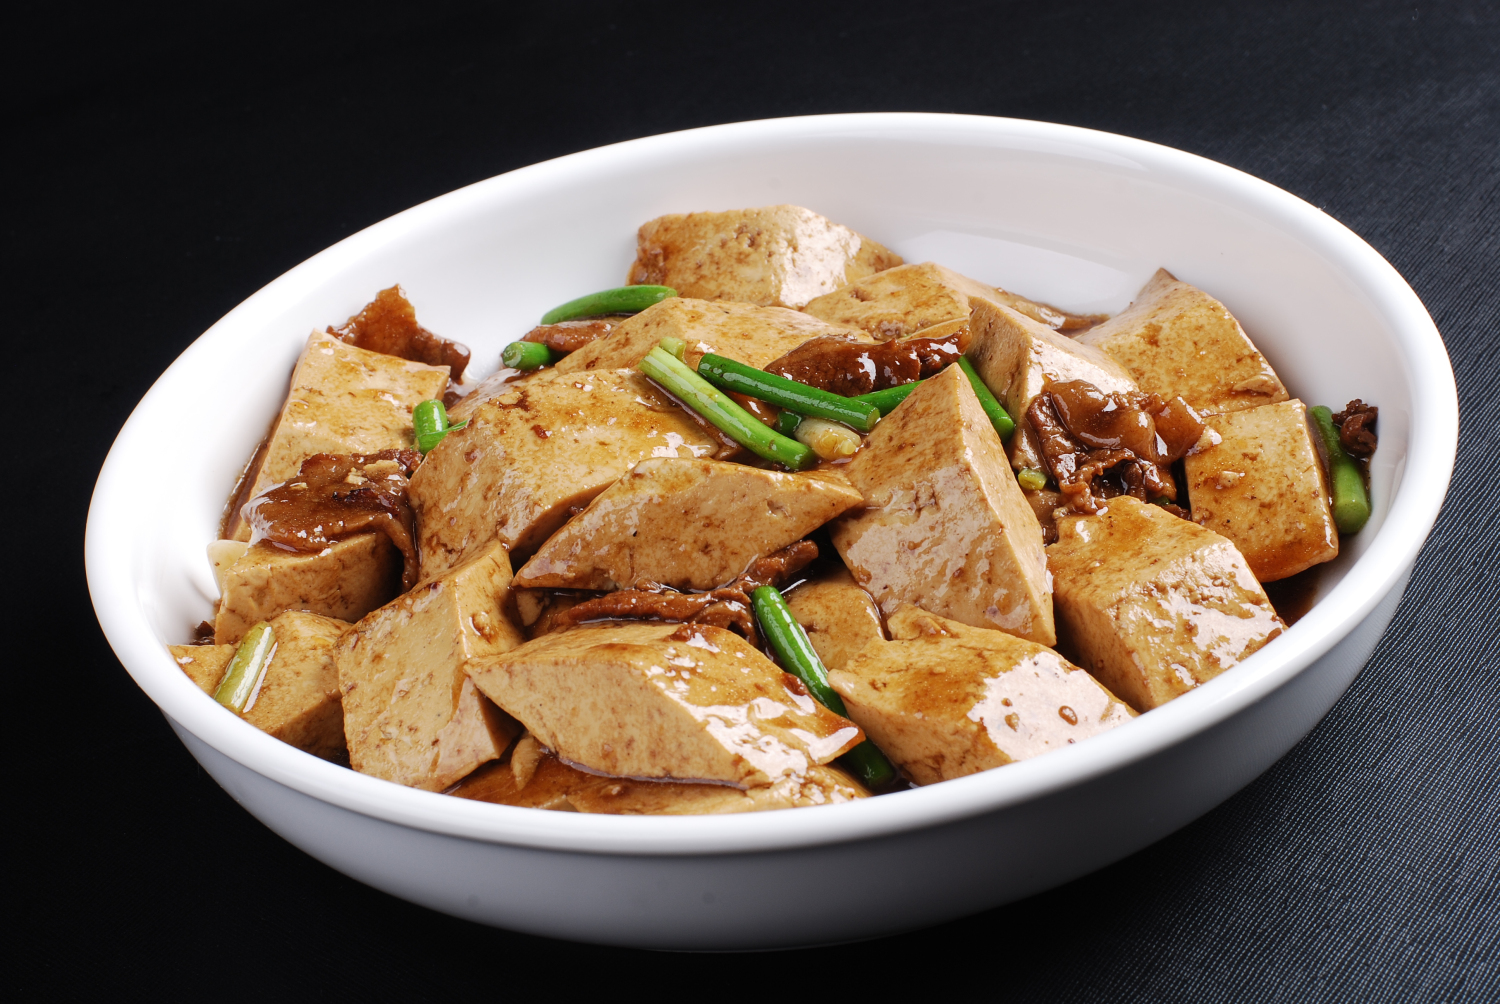 农家肉炖老豆腐:农村手工制作的老豆腐,味道就是独特,在城里都很难吃